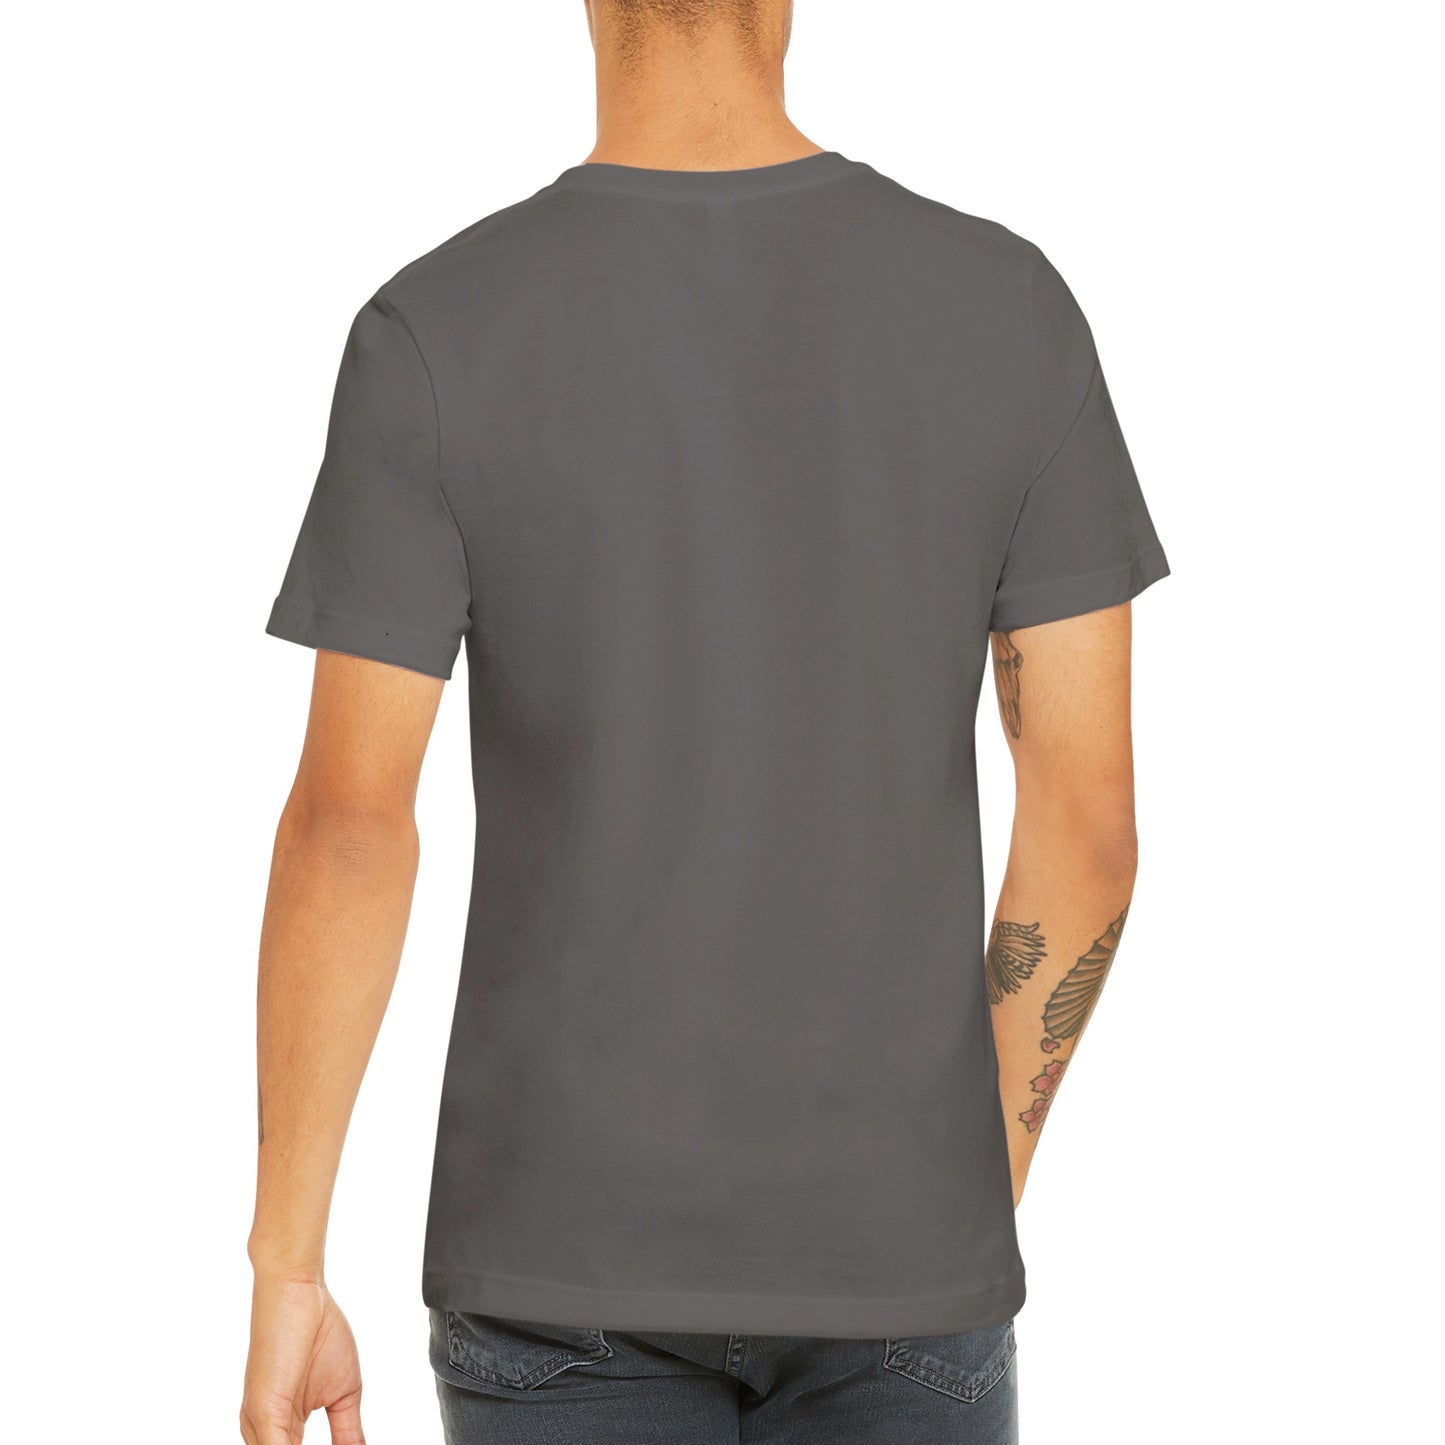 Premium Unisex Rise and Grind T-shirt